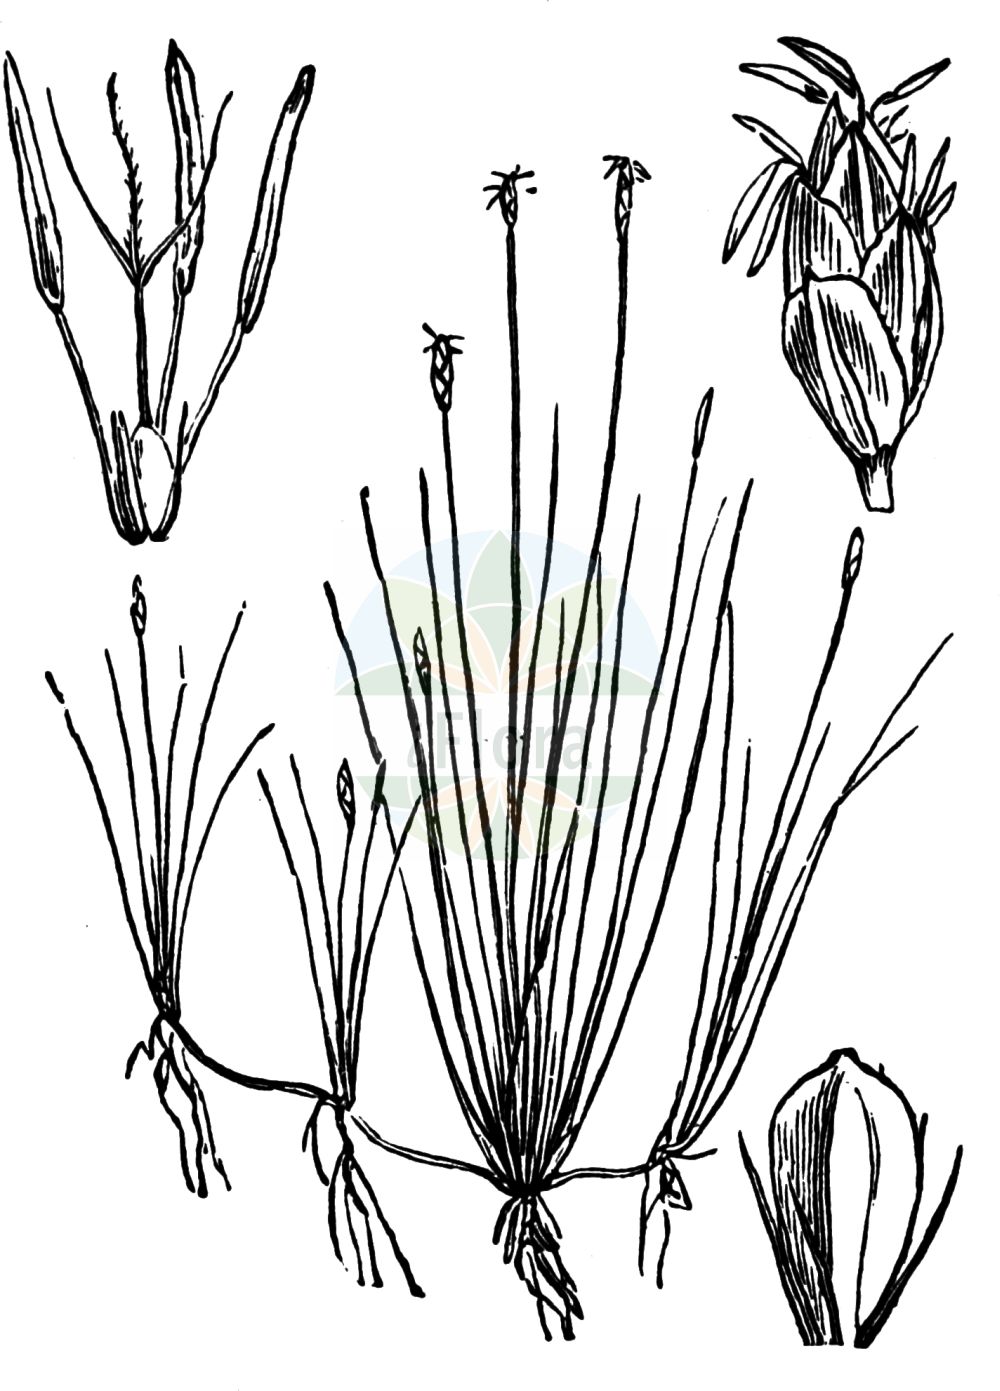 Historische Abbildung von Eleocharis acicularis (Nadel-Sumpfbinse - Needle Spike-rush). Das Bild zeigt Blatt, Bluete, Frucht und Same. ---- Historical Drawing of Eleocharis acicularis (Nadel-Sumpfbinse - Needle Spike-rush). The image is showing leaf, flower, fruit and seed.(Eleocharis acicularis,Nadel-Sumpfbinse,Needle Spike-rush,Eleocharis acicularis,Scirpus acicularis,Nadel-Sumpfbinse,Nadelbinse,Needle Spike-rush,Slender Spikerush,Eleocharis,Sumpfbinse,Spikerush,Cyperaceae,Sauergräser,Sedge family,Blatt,Bluete,Frucht,Same,leaf,flower,fruit,seed,Fitch et al. (1880))